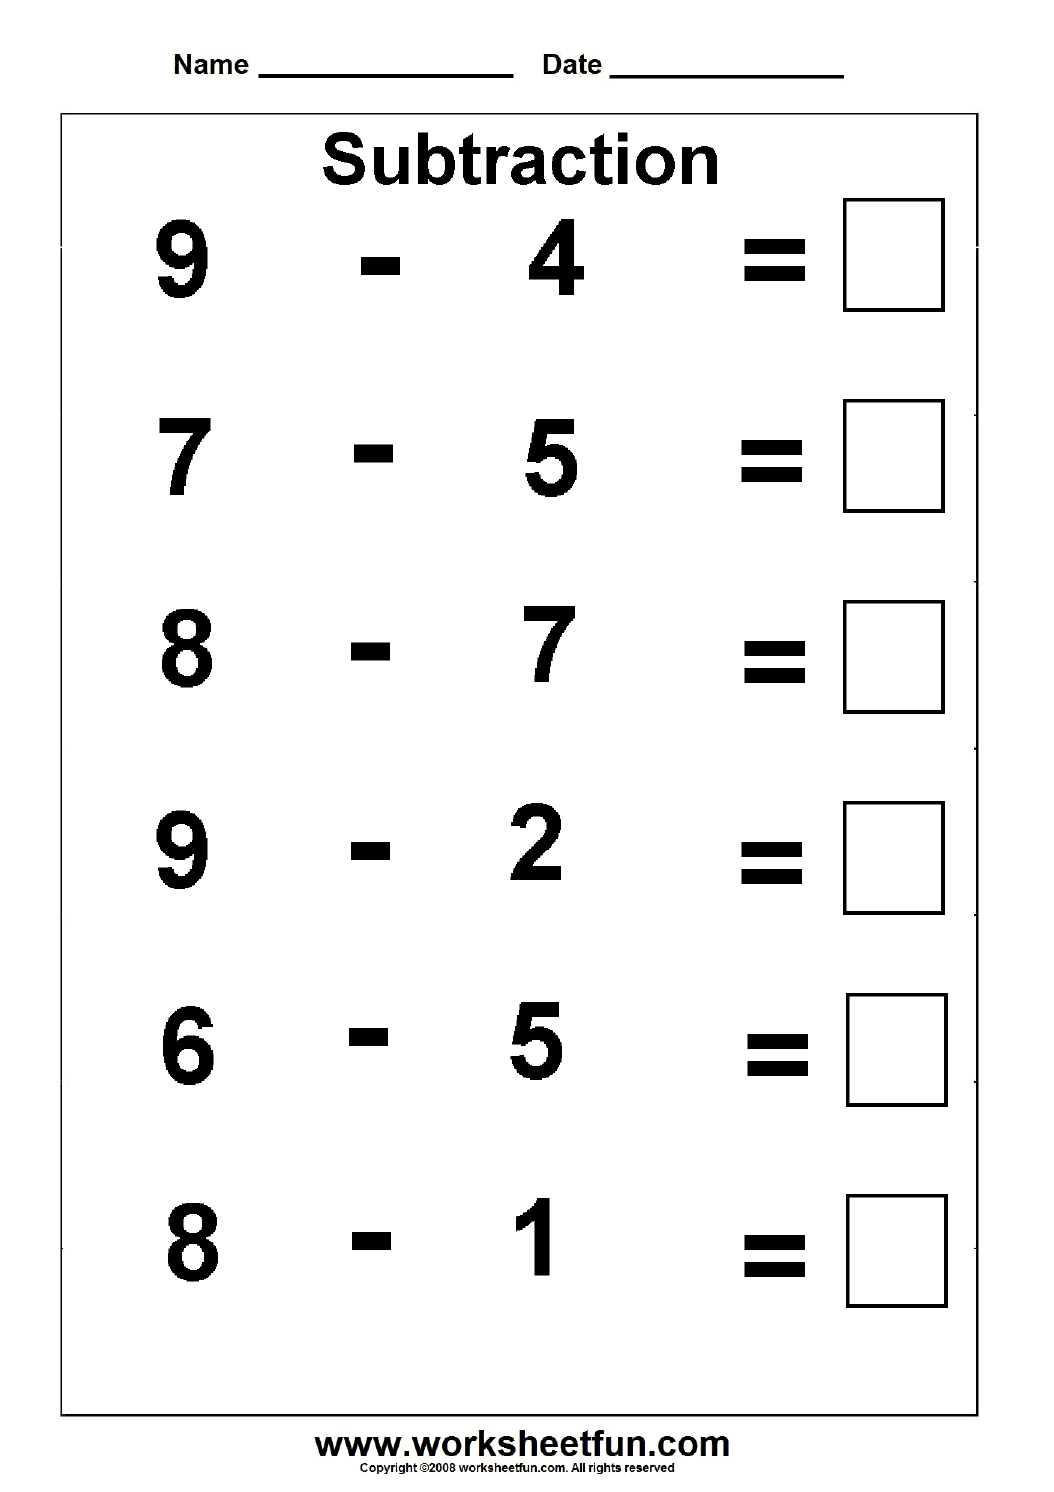 Addition Subtraction Worksheets Kindergarten Image